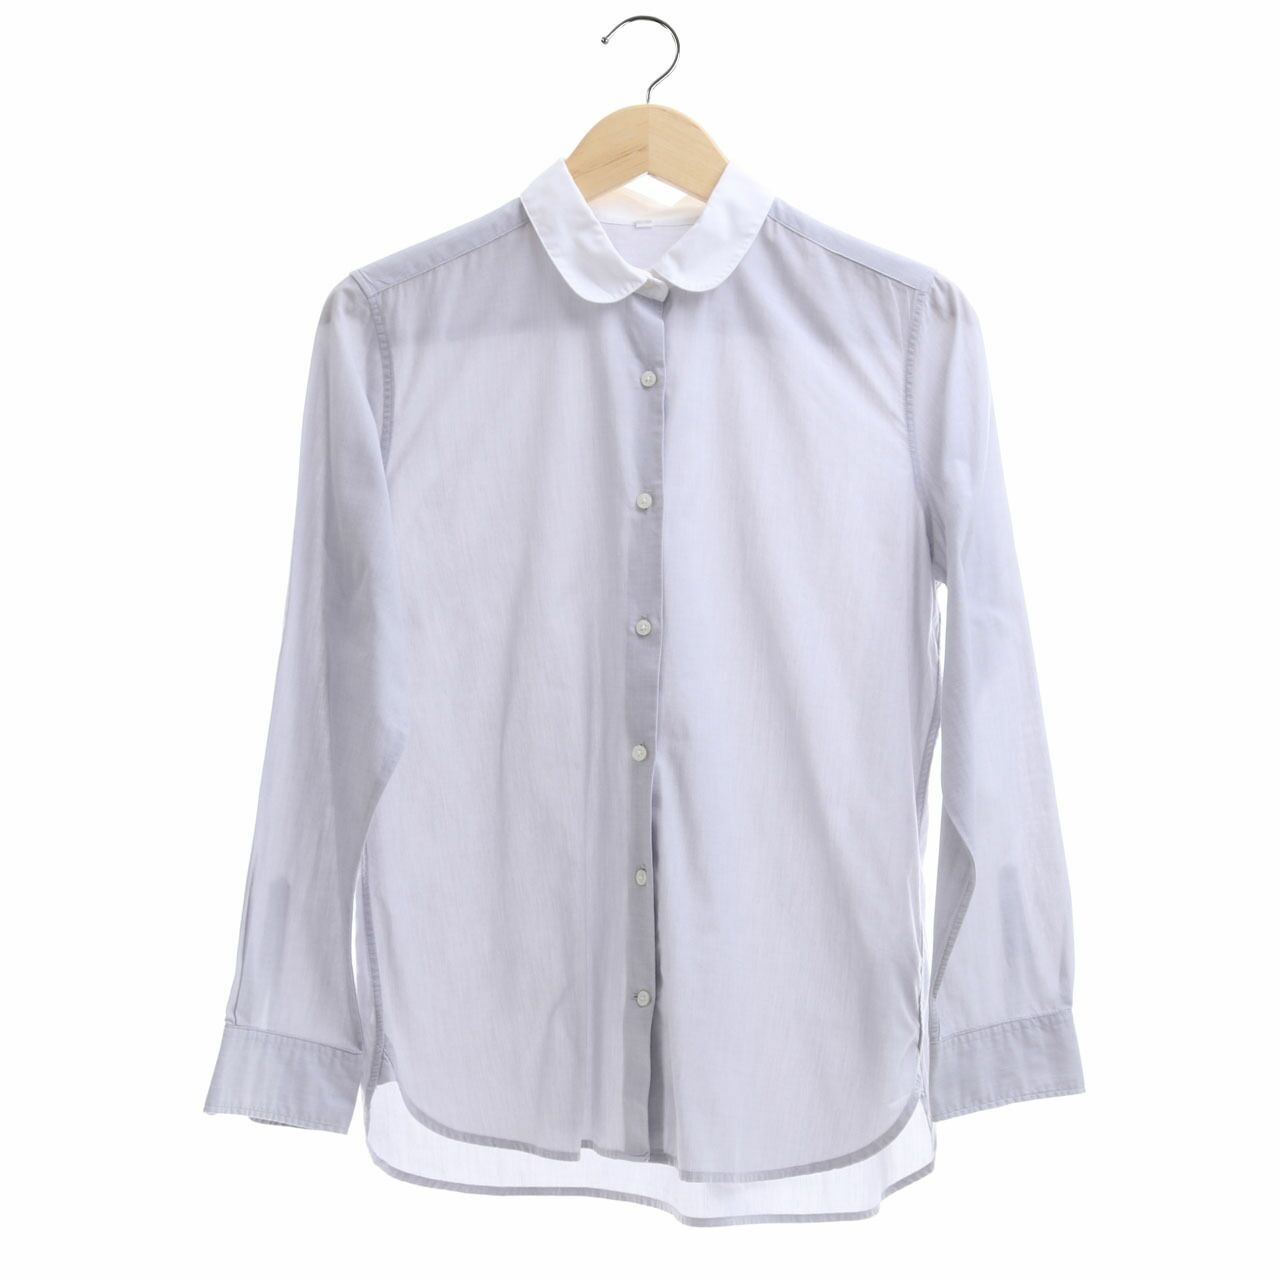 Muji Light Grey Shirt